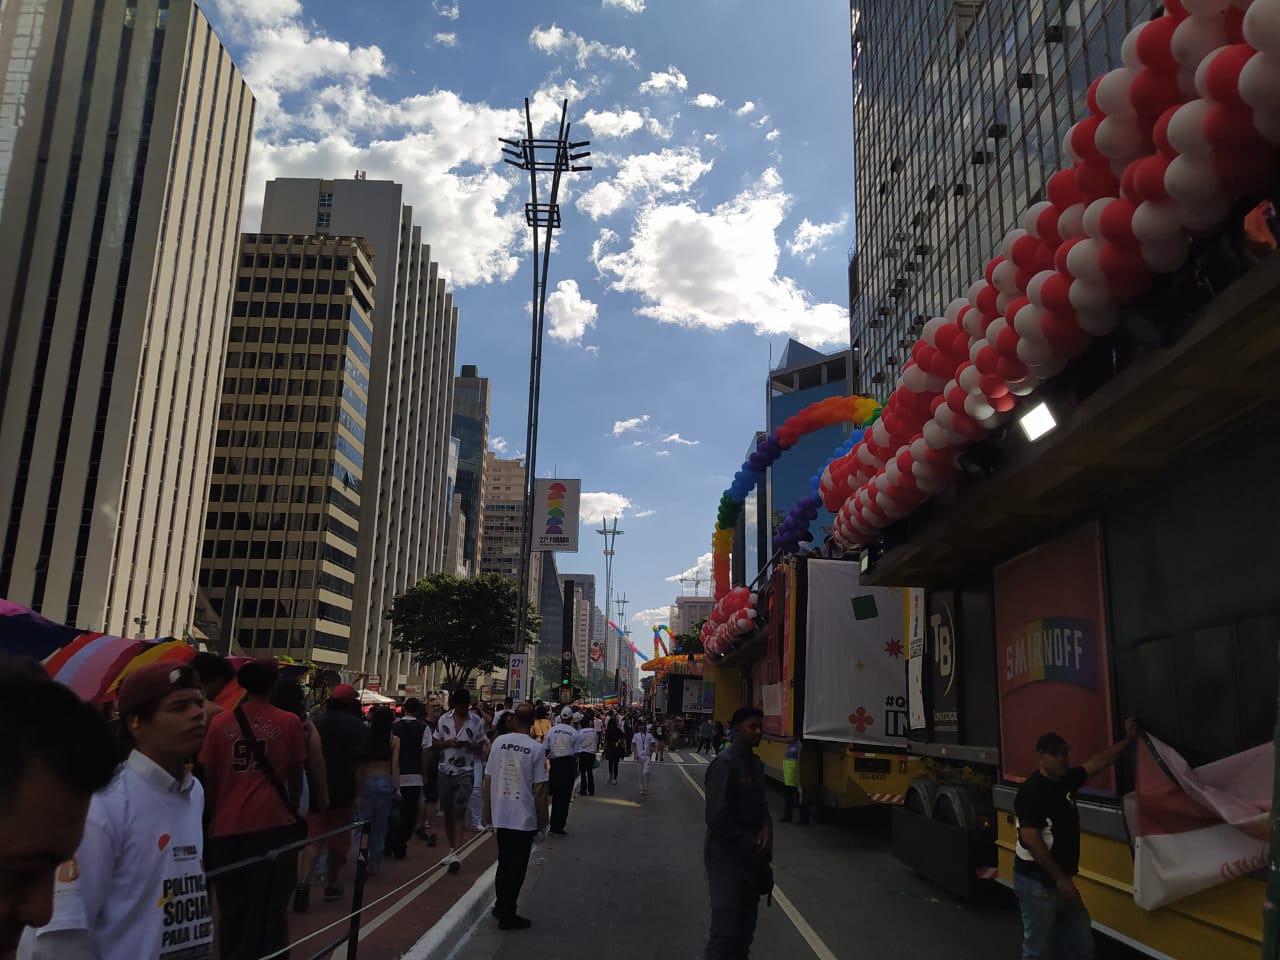 A Parada começa no prédio da TV Gazeta e vai até a Praça Roosevelt. Foto: Rafael Nascimento/iG